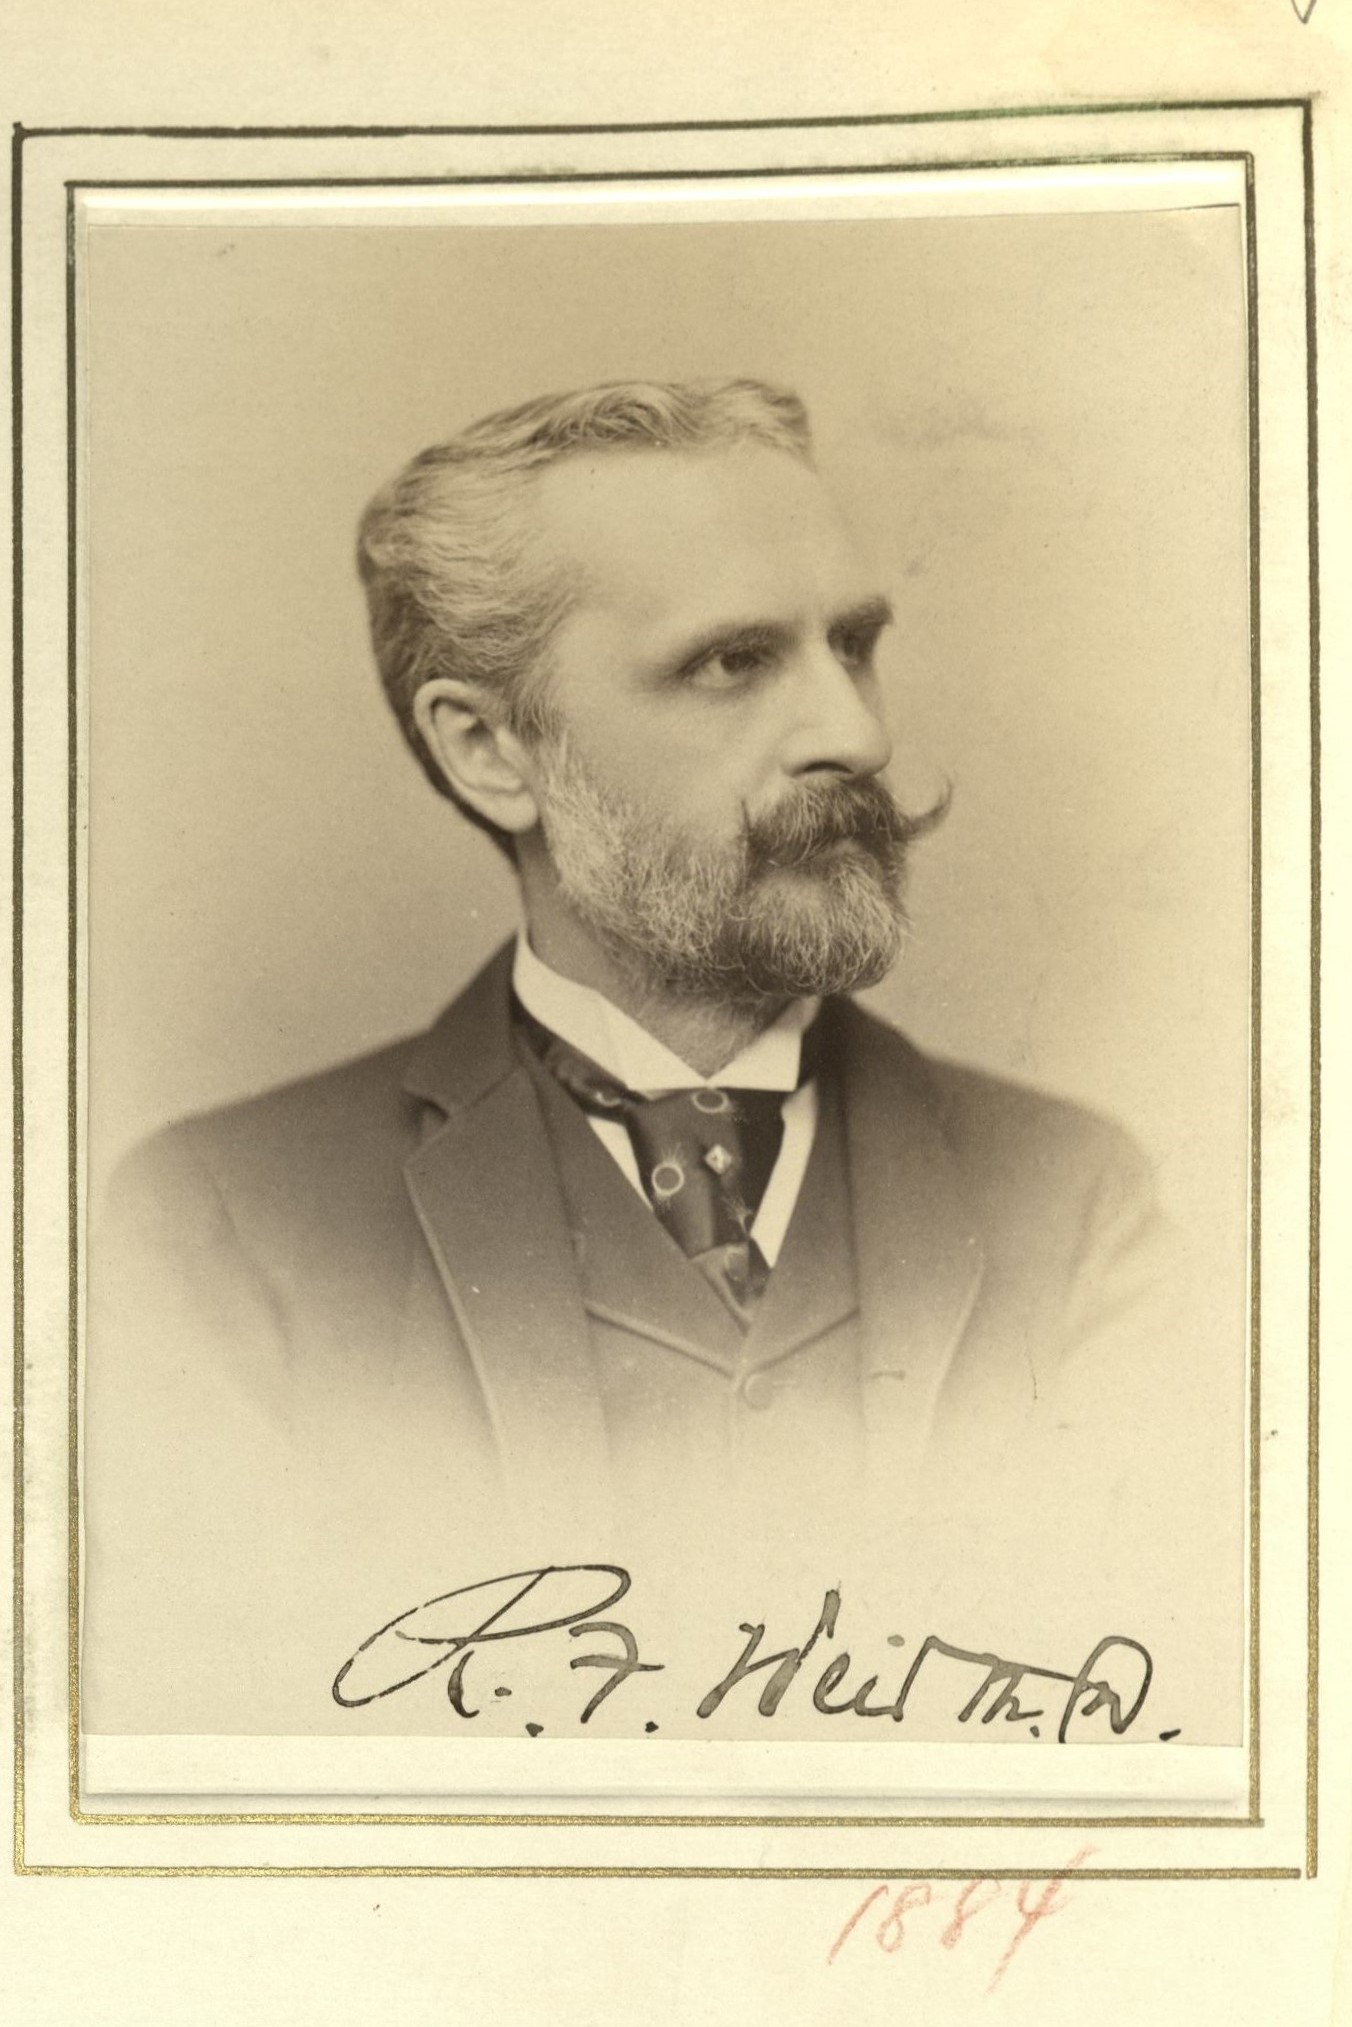 Member portrait of Robert F. Weir